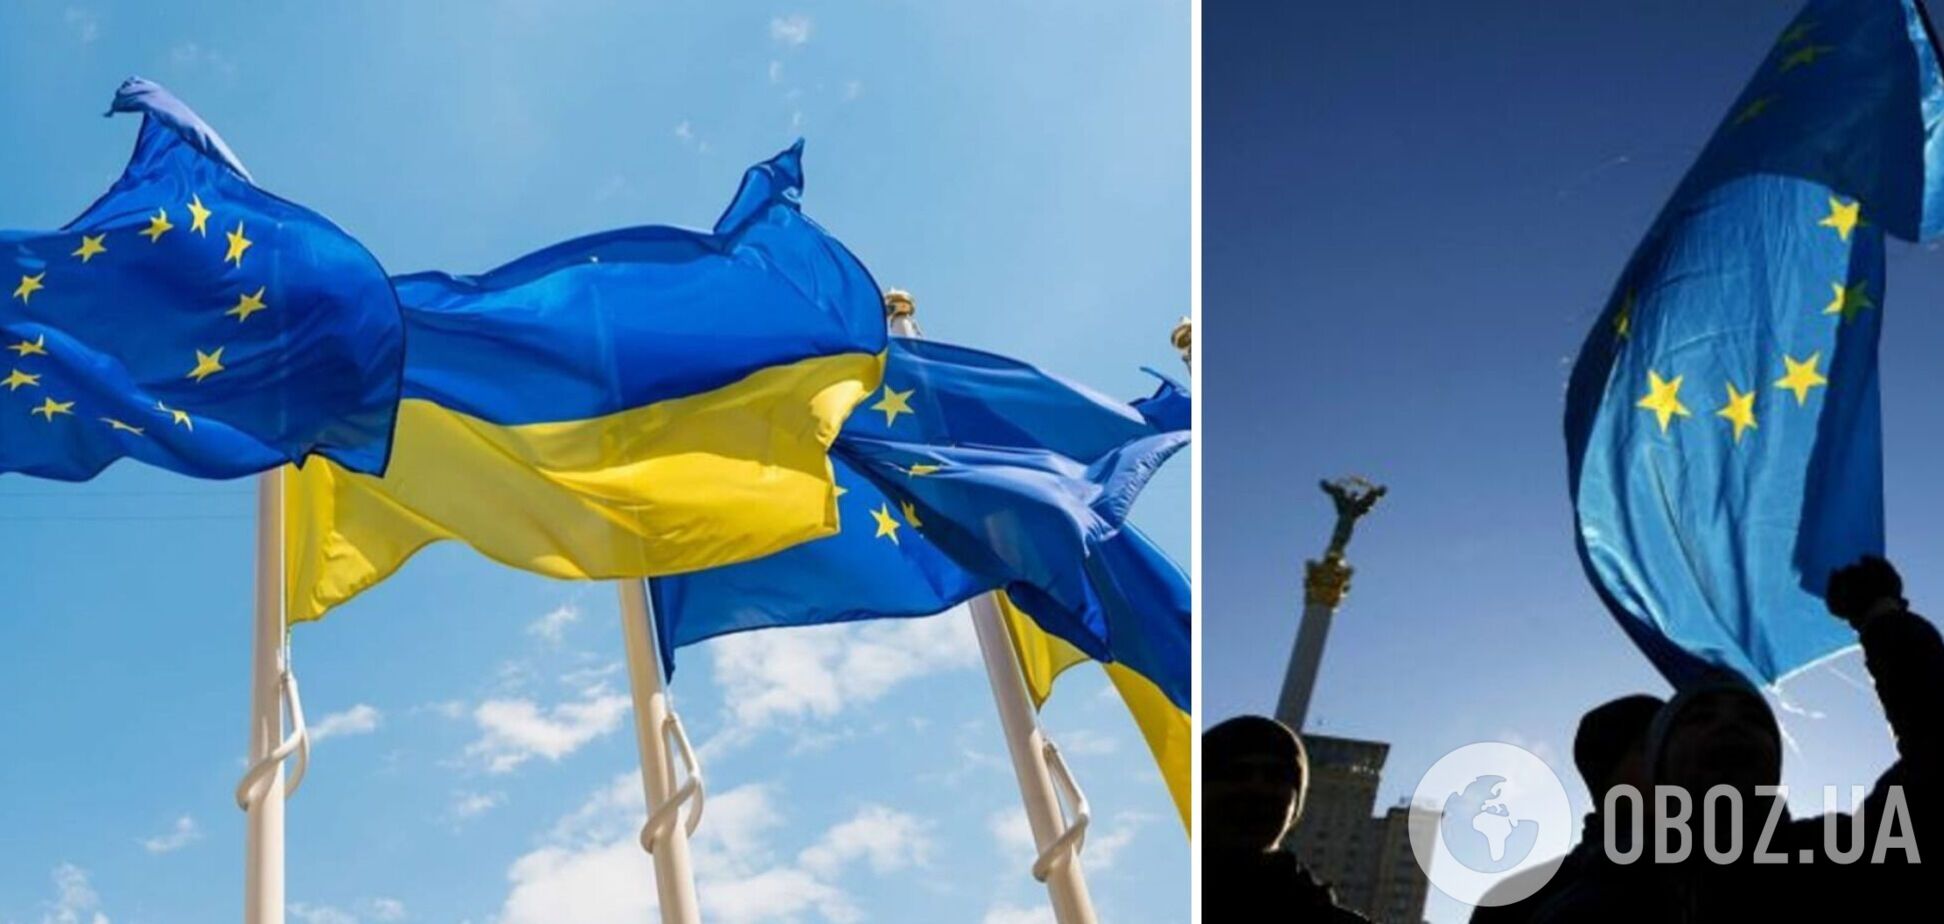  ЕС и его члены были одними из крупнейших доноров военной помощи Украине 